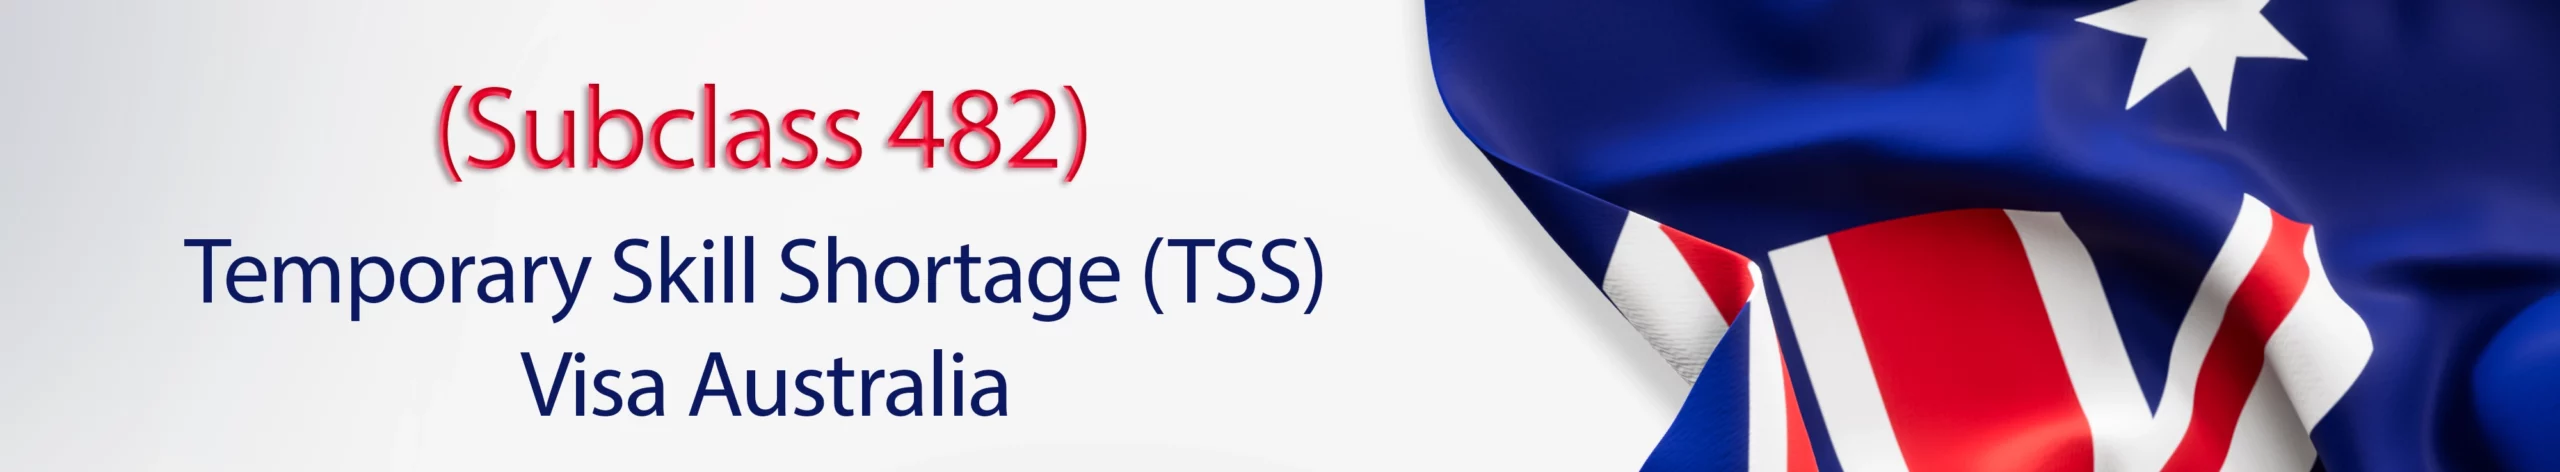 emporary Skill Shortage (TSS) Visa Australia banner